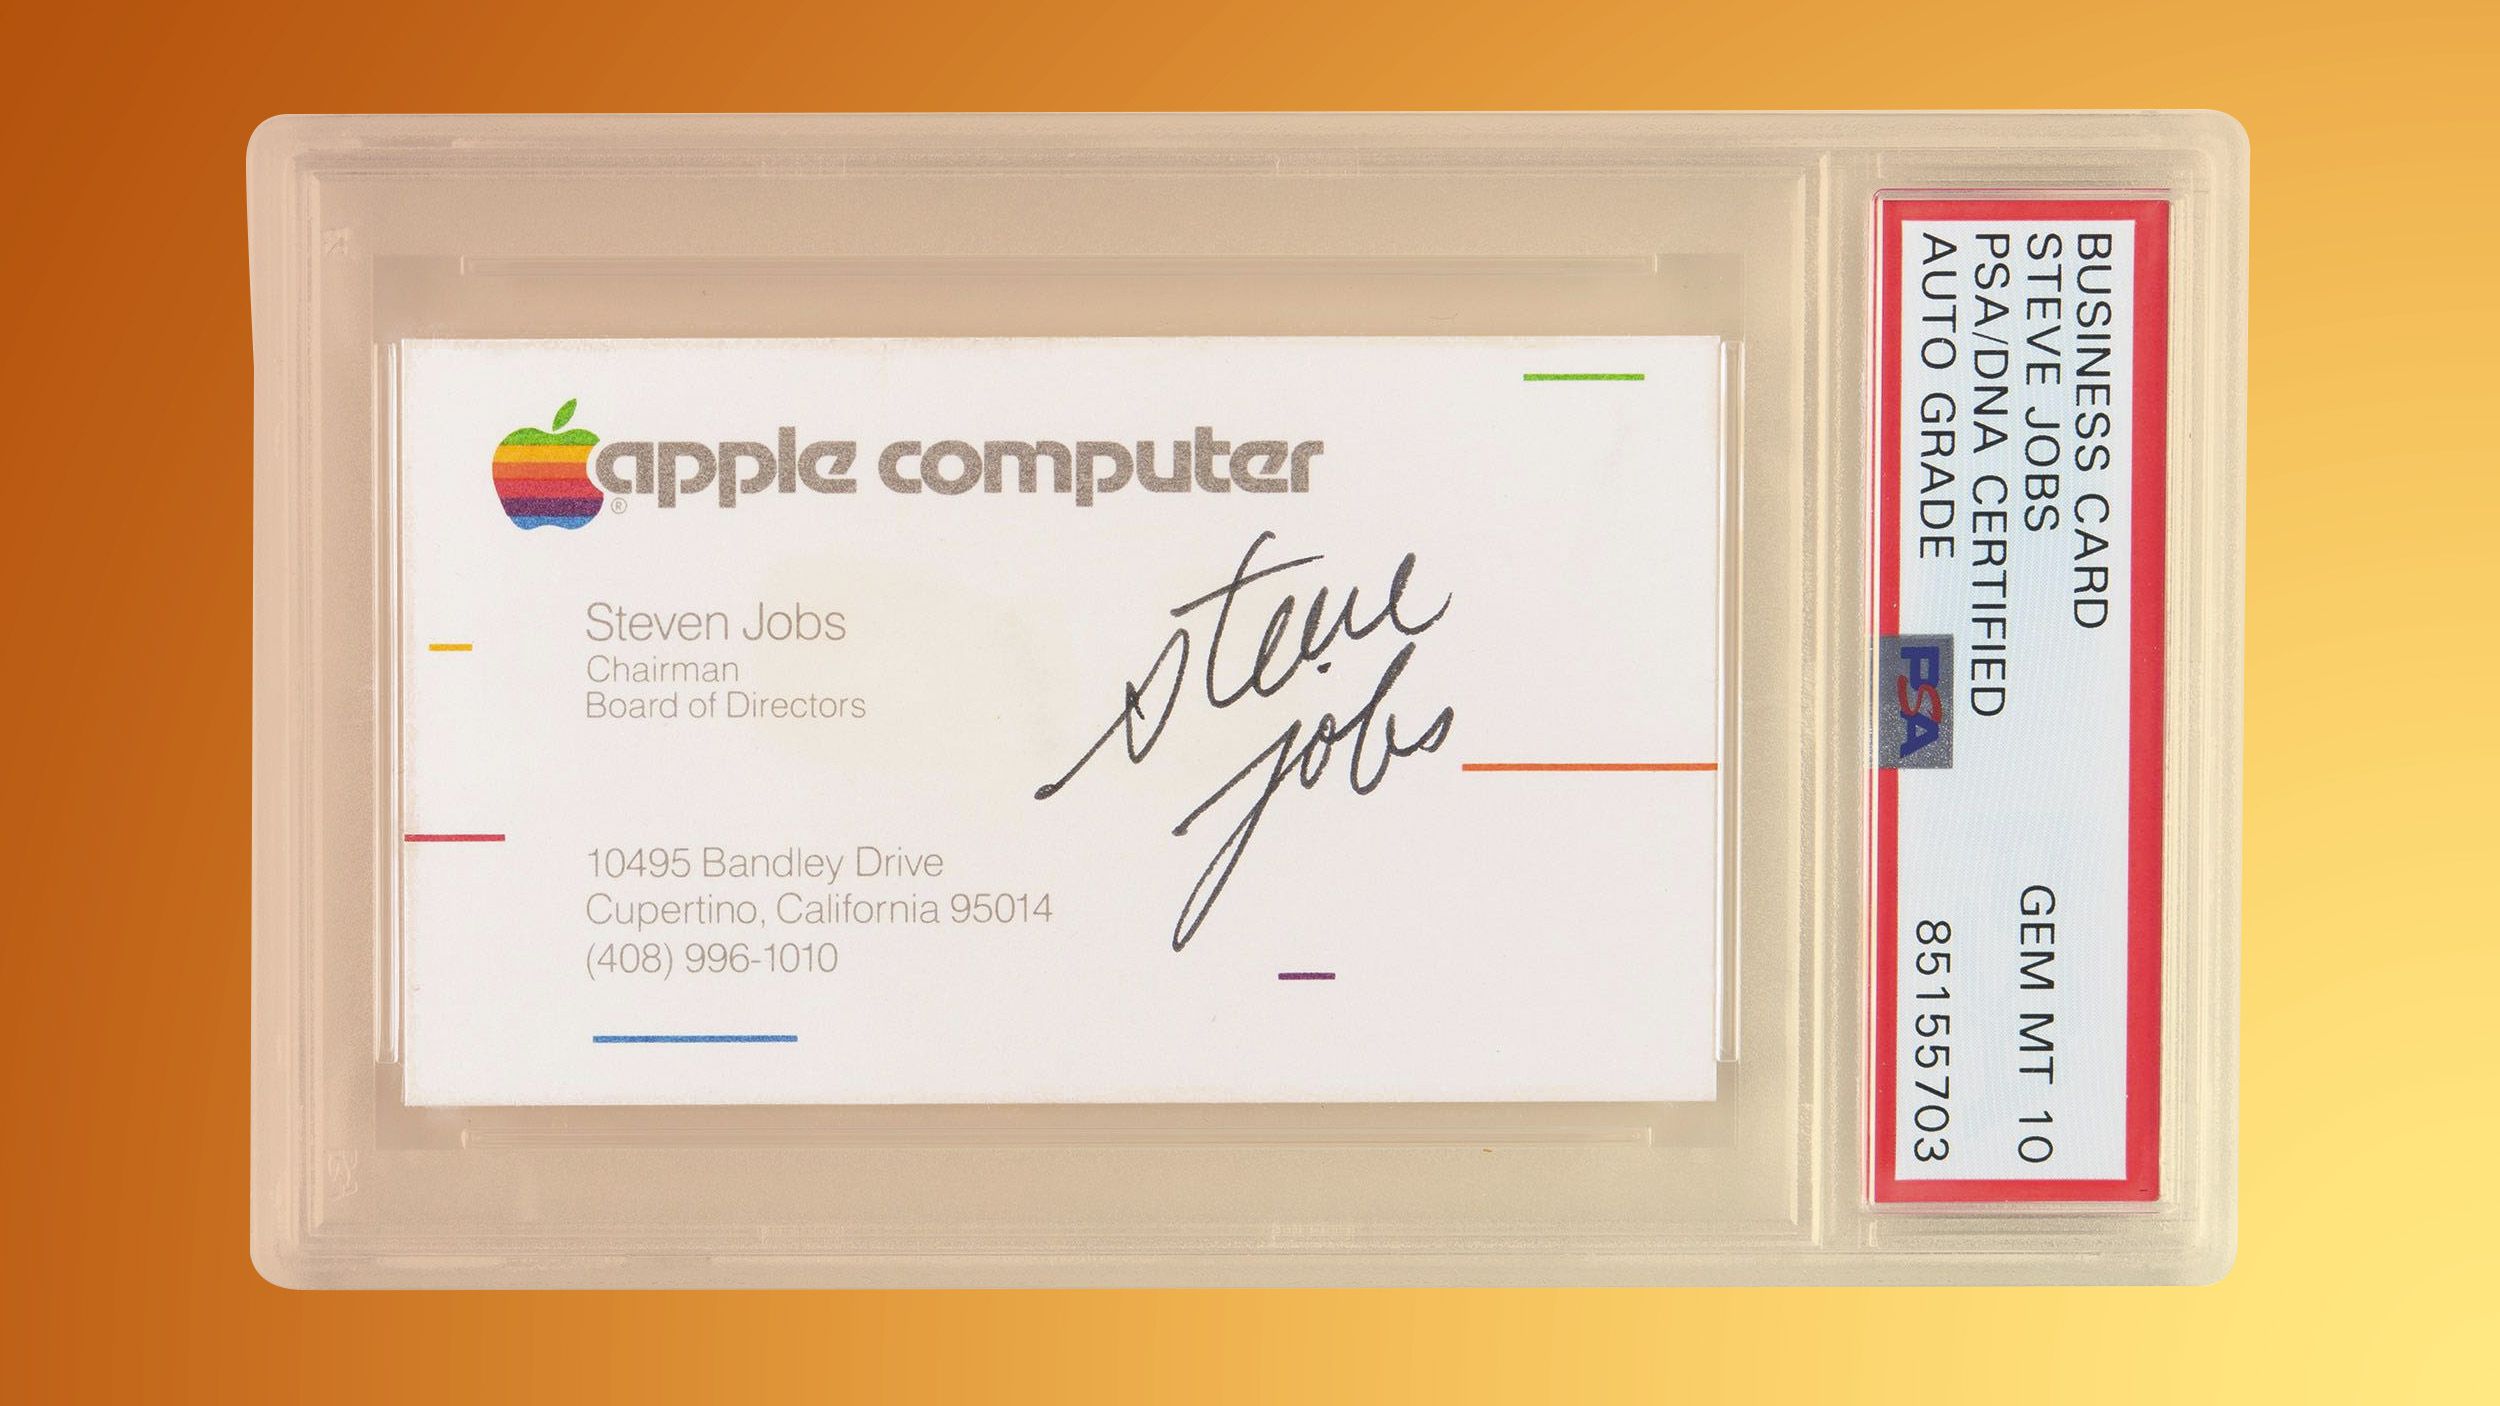 Визитку с автографом Стива Джобса продали за 180 тысяч долларов (фото 1)